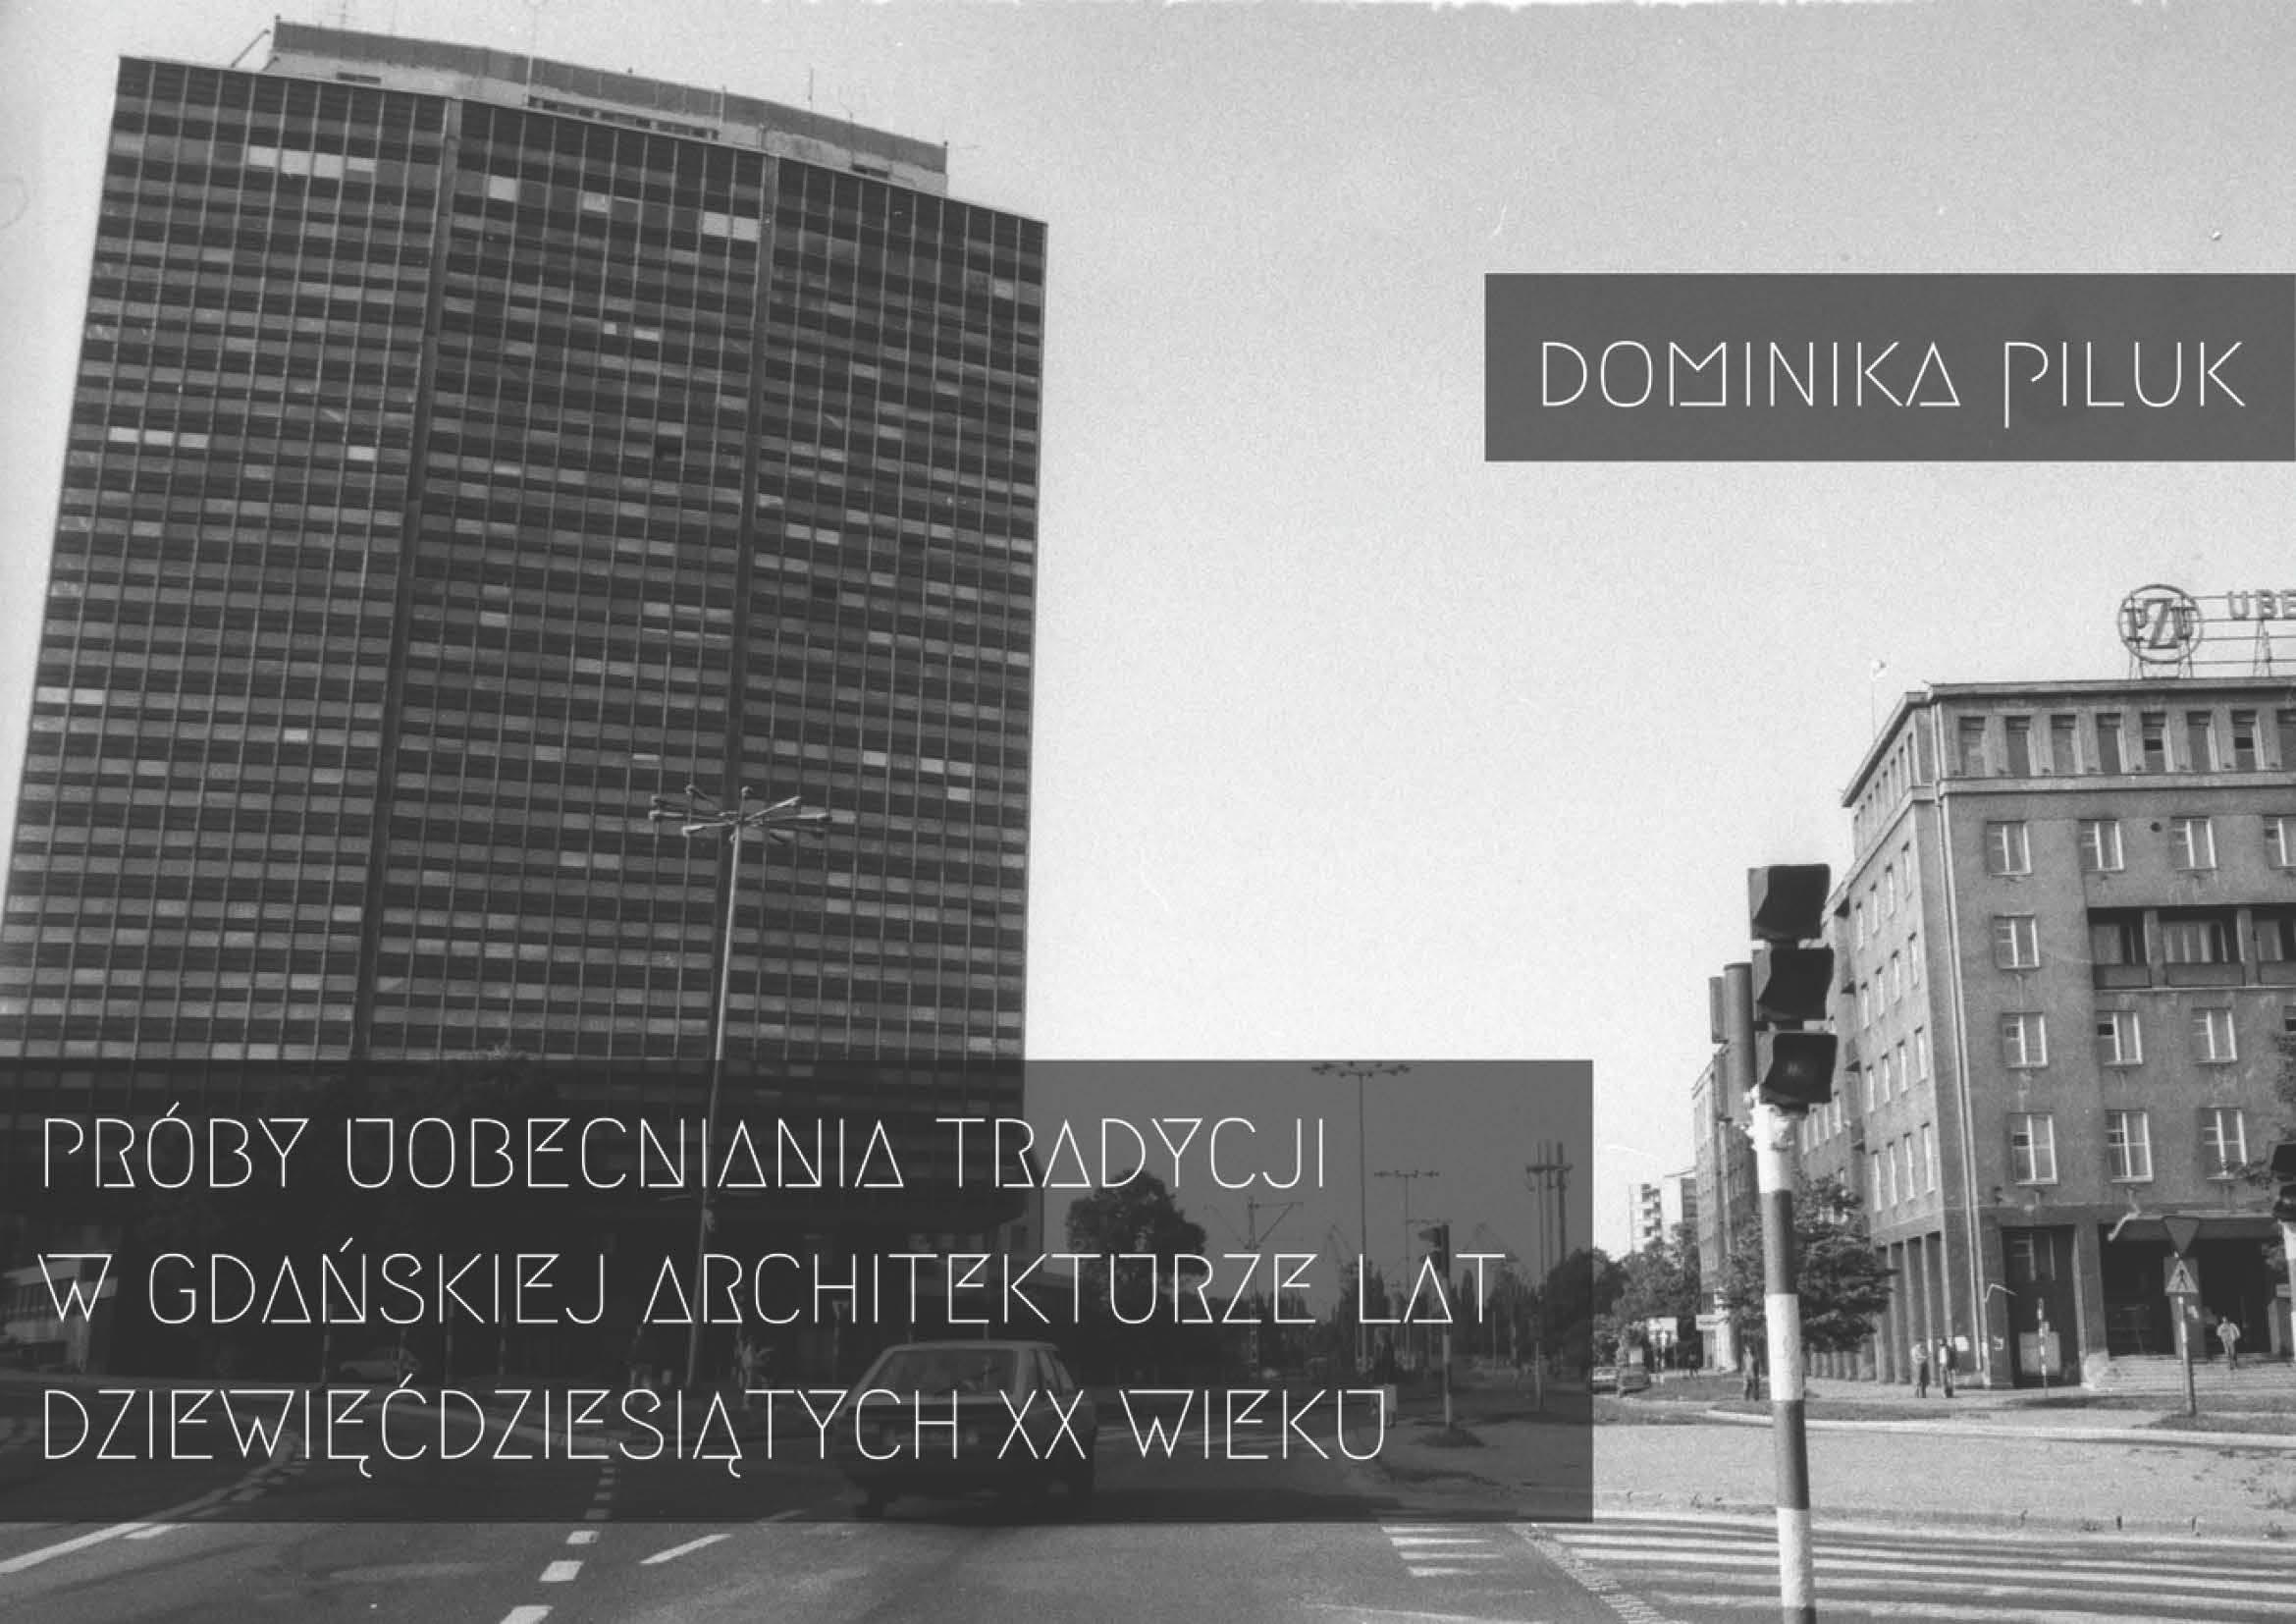 4._dominika_piluk_-_proby_uobecniania_tradycji_w_gdanskiej_architekturze_lat_dziewiecdziesiatych_xx_wieku